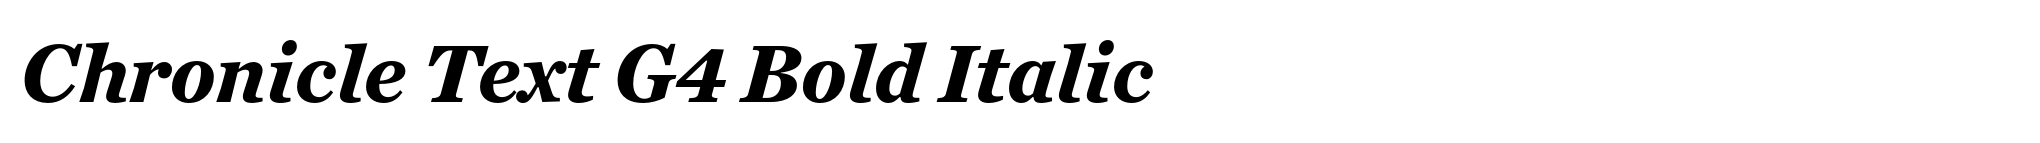 Chronicle Text G4 Bold Italic image